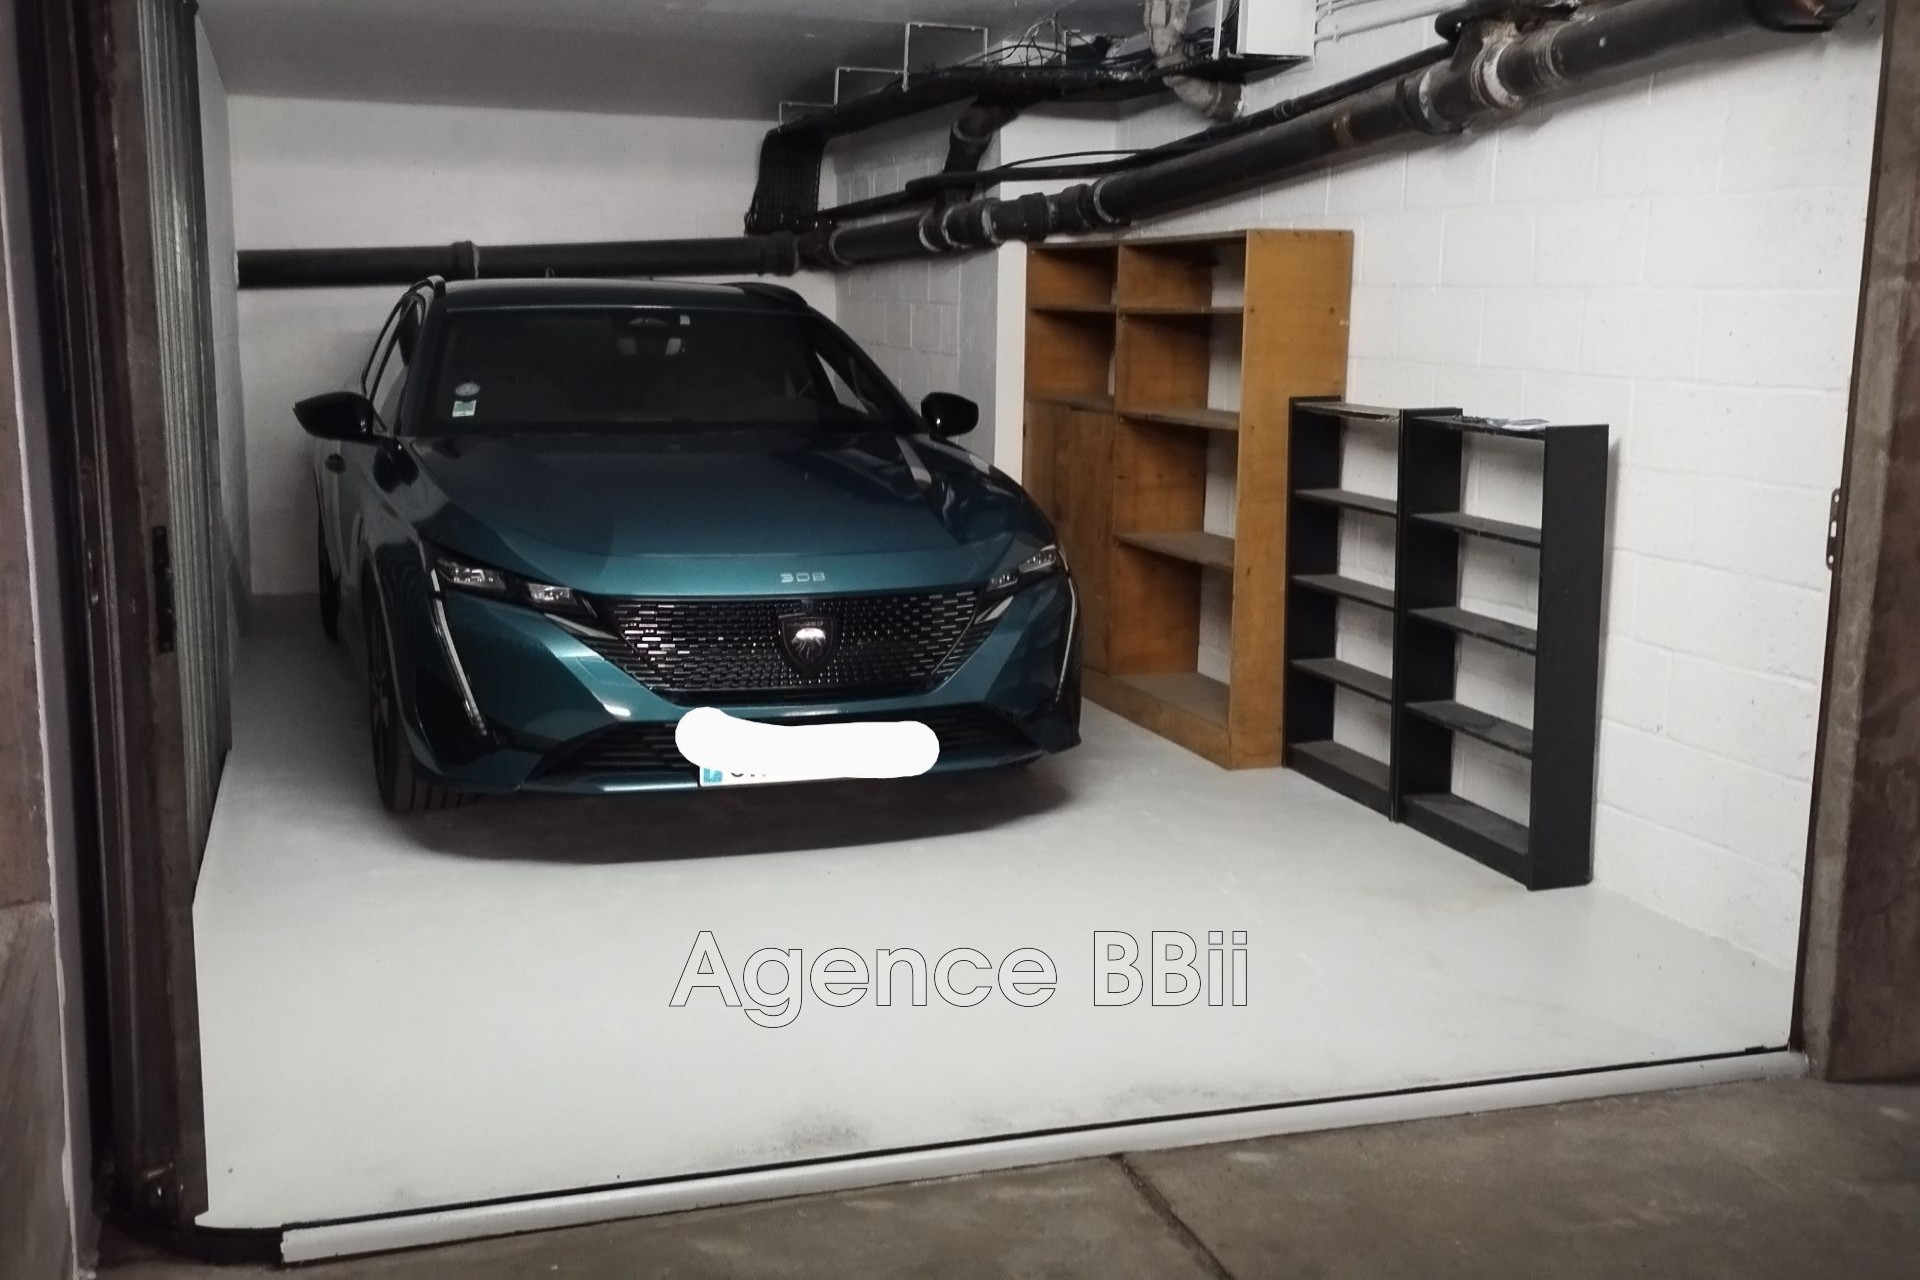 Vente Garage / Parking à Paris Observatoire 14e arrondissement 0 pièce